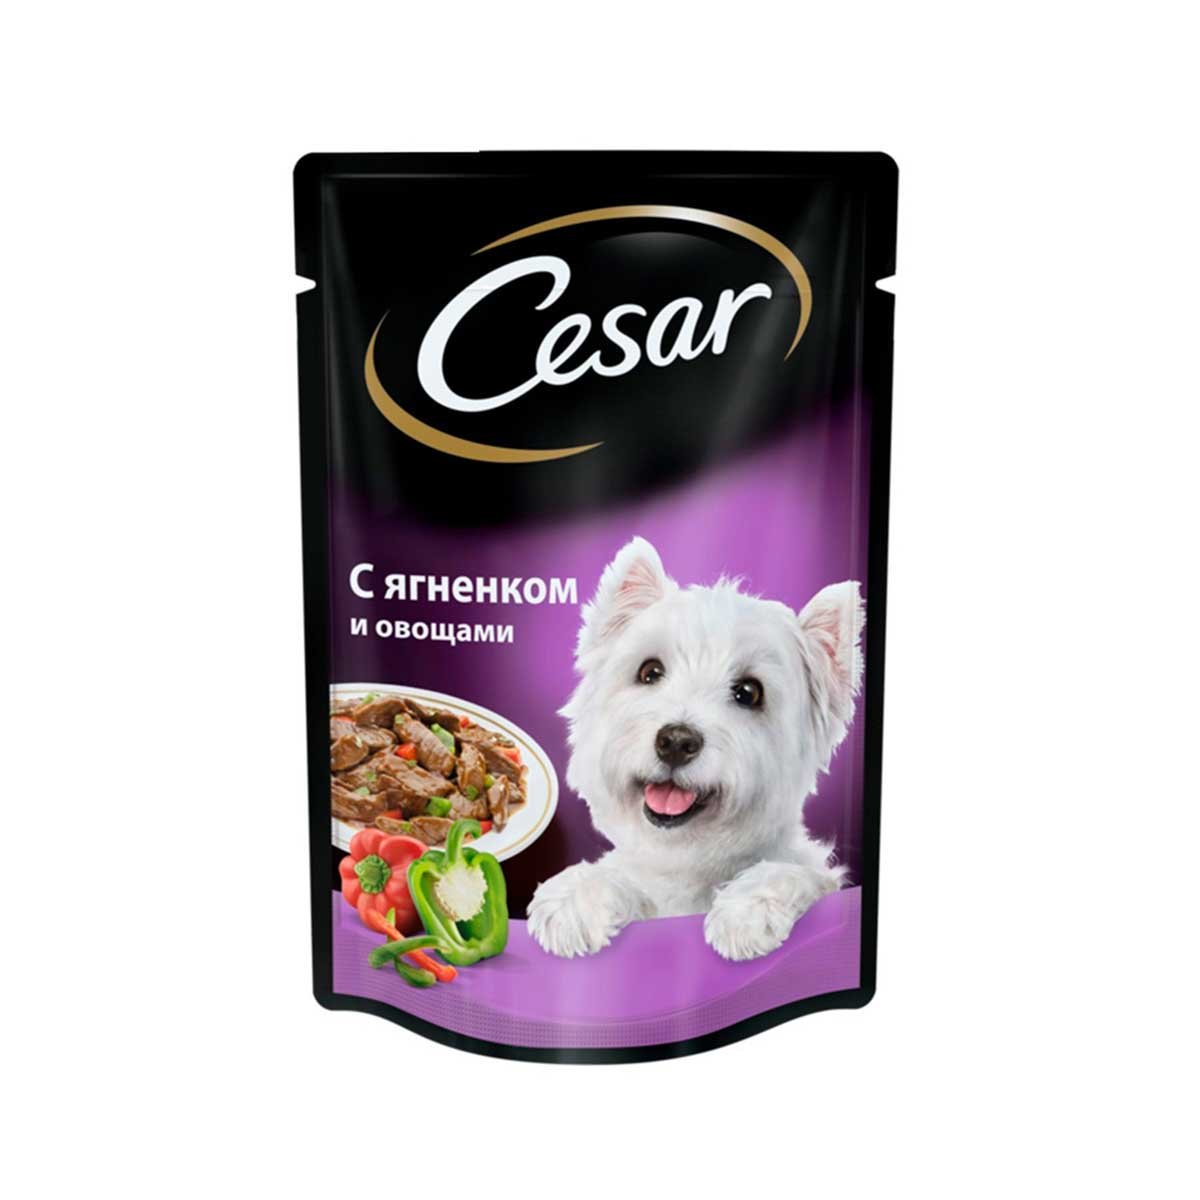 Валберис корм для собак. Корм для собак Cesar ягненок 100г. Корм для собак Cesar ягненок в сырном соусе 100г. Влажный корм для собак Cesar. Сезар корм влажный для собак.